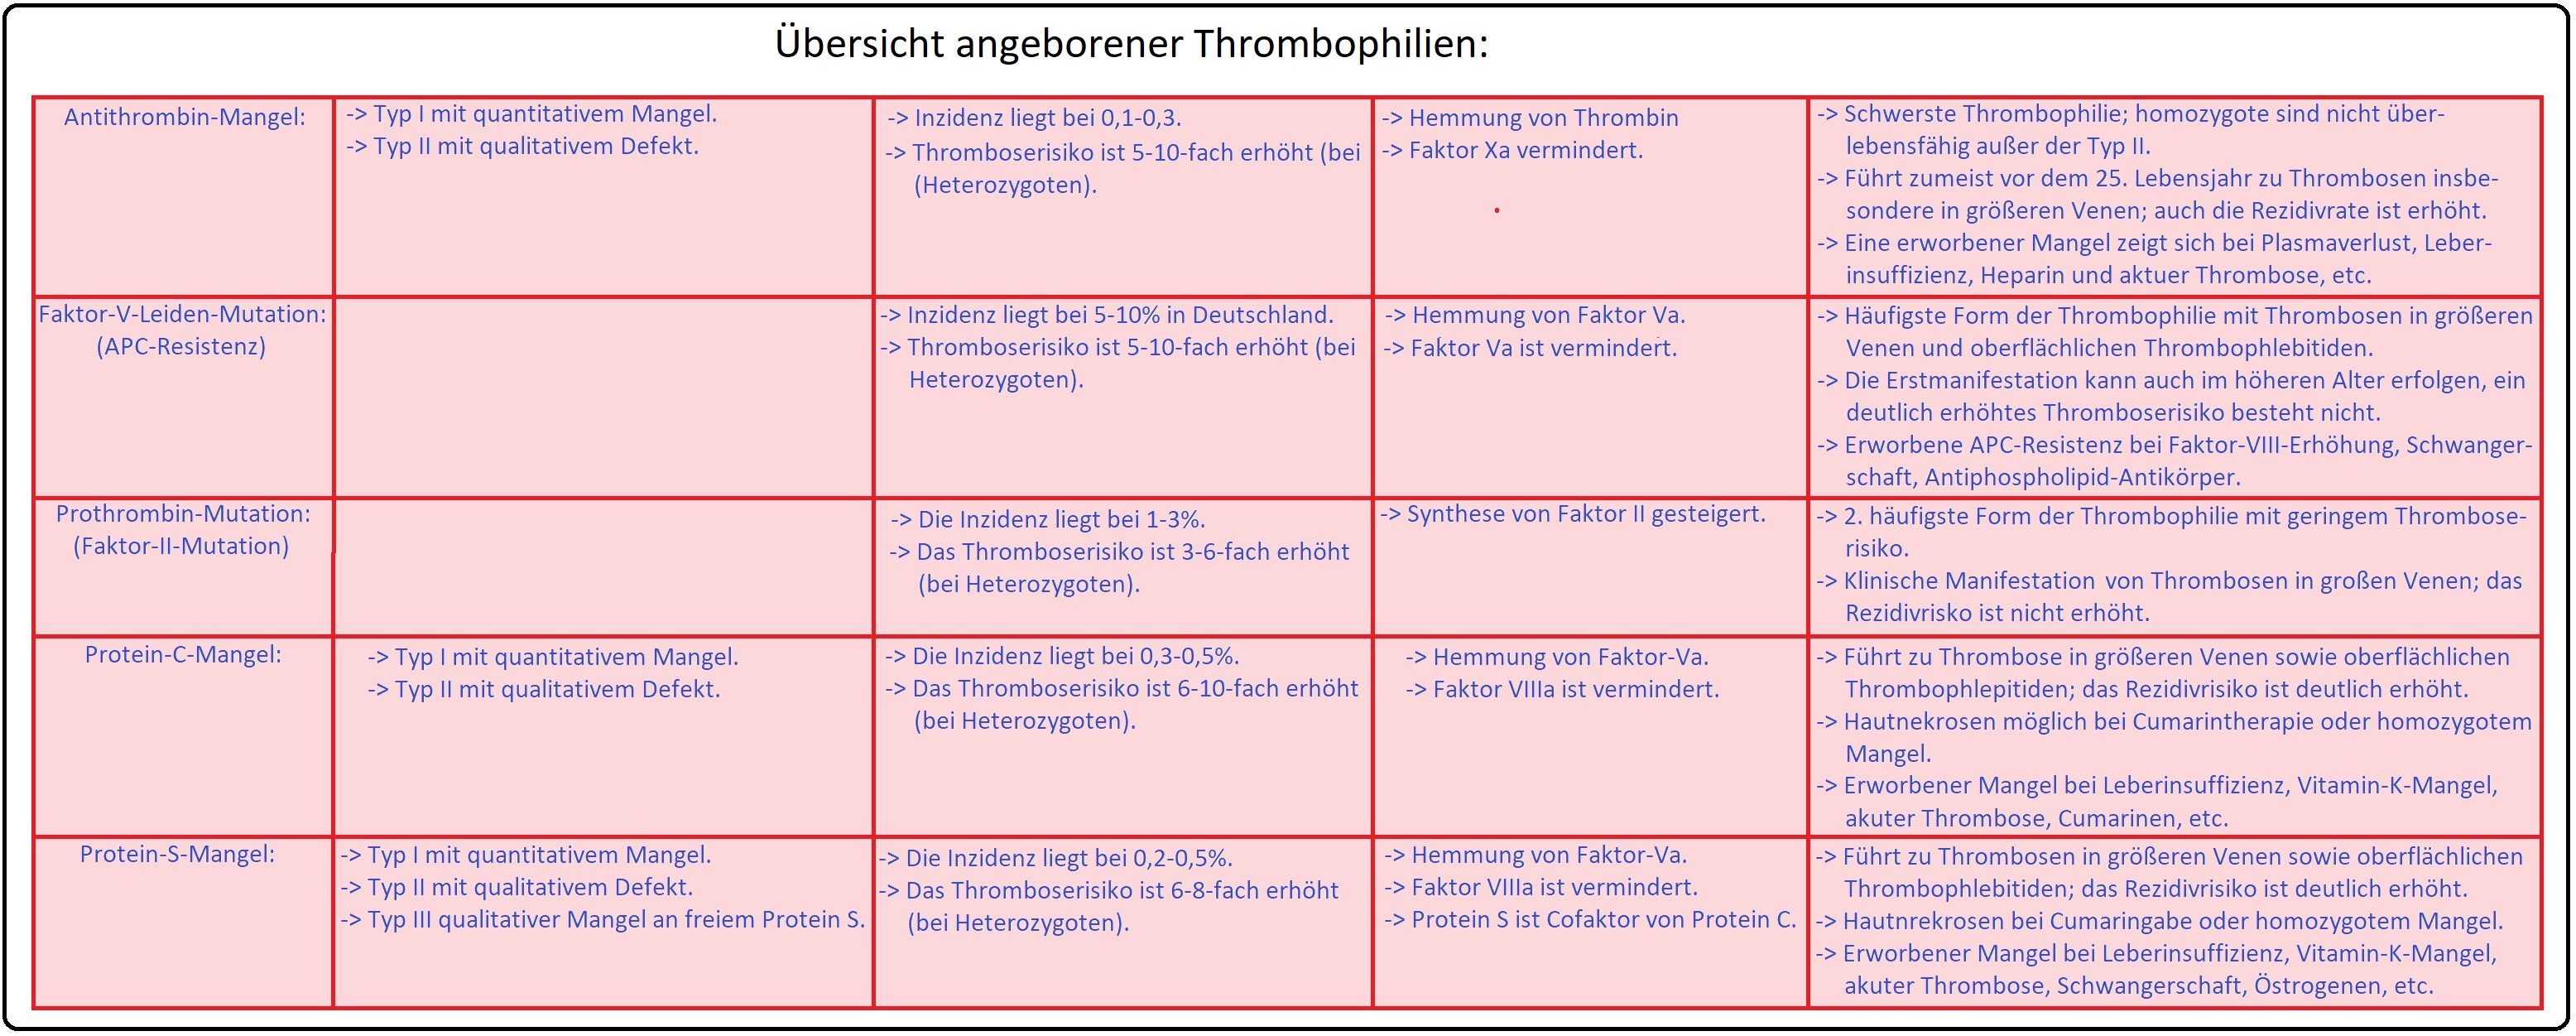 1104 Übersicht angeborener Thrombophilien